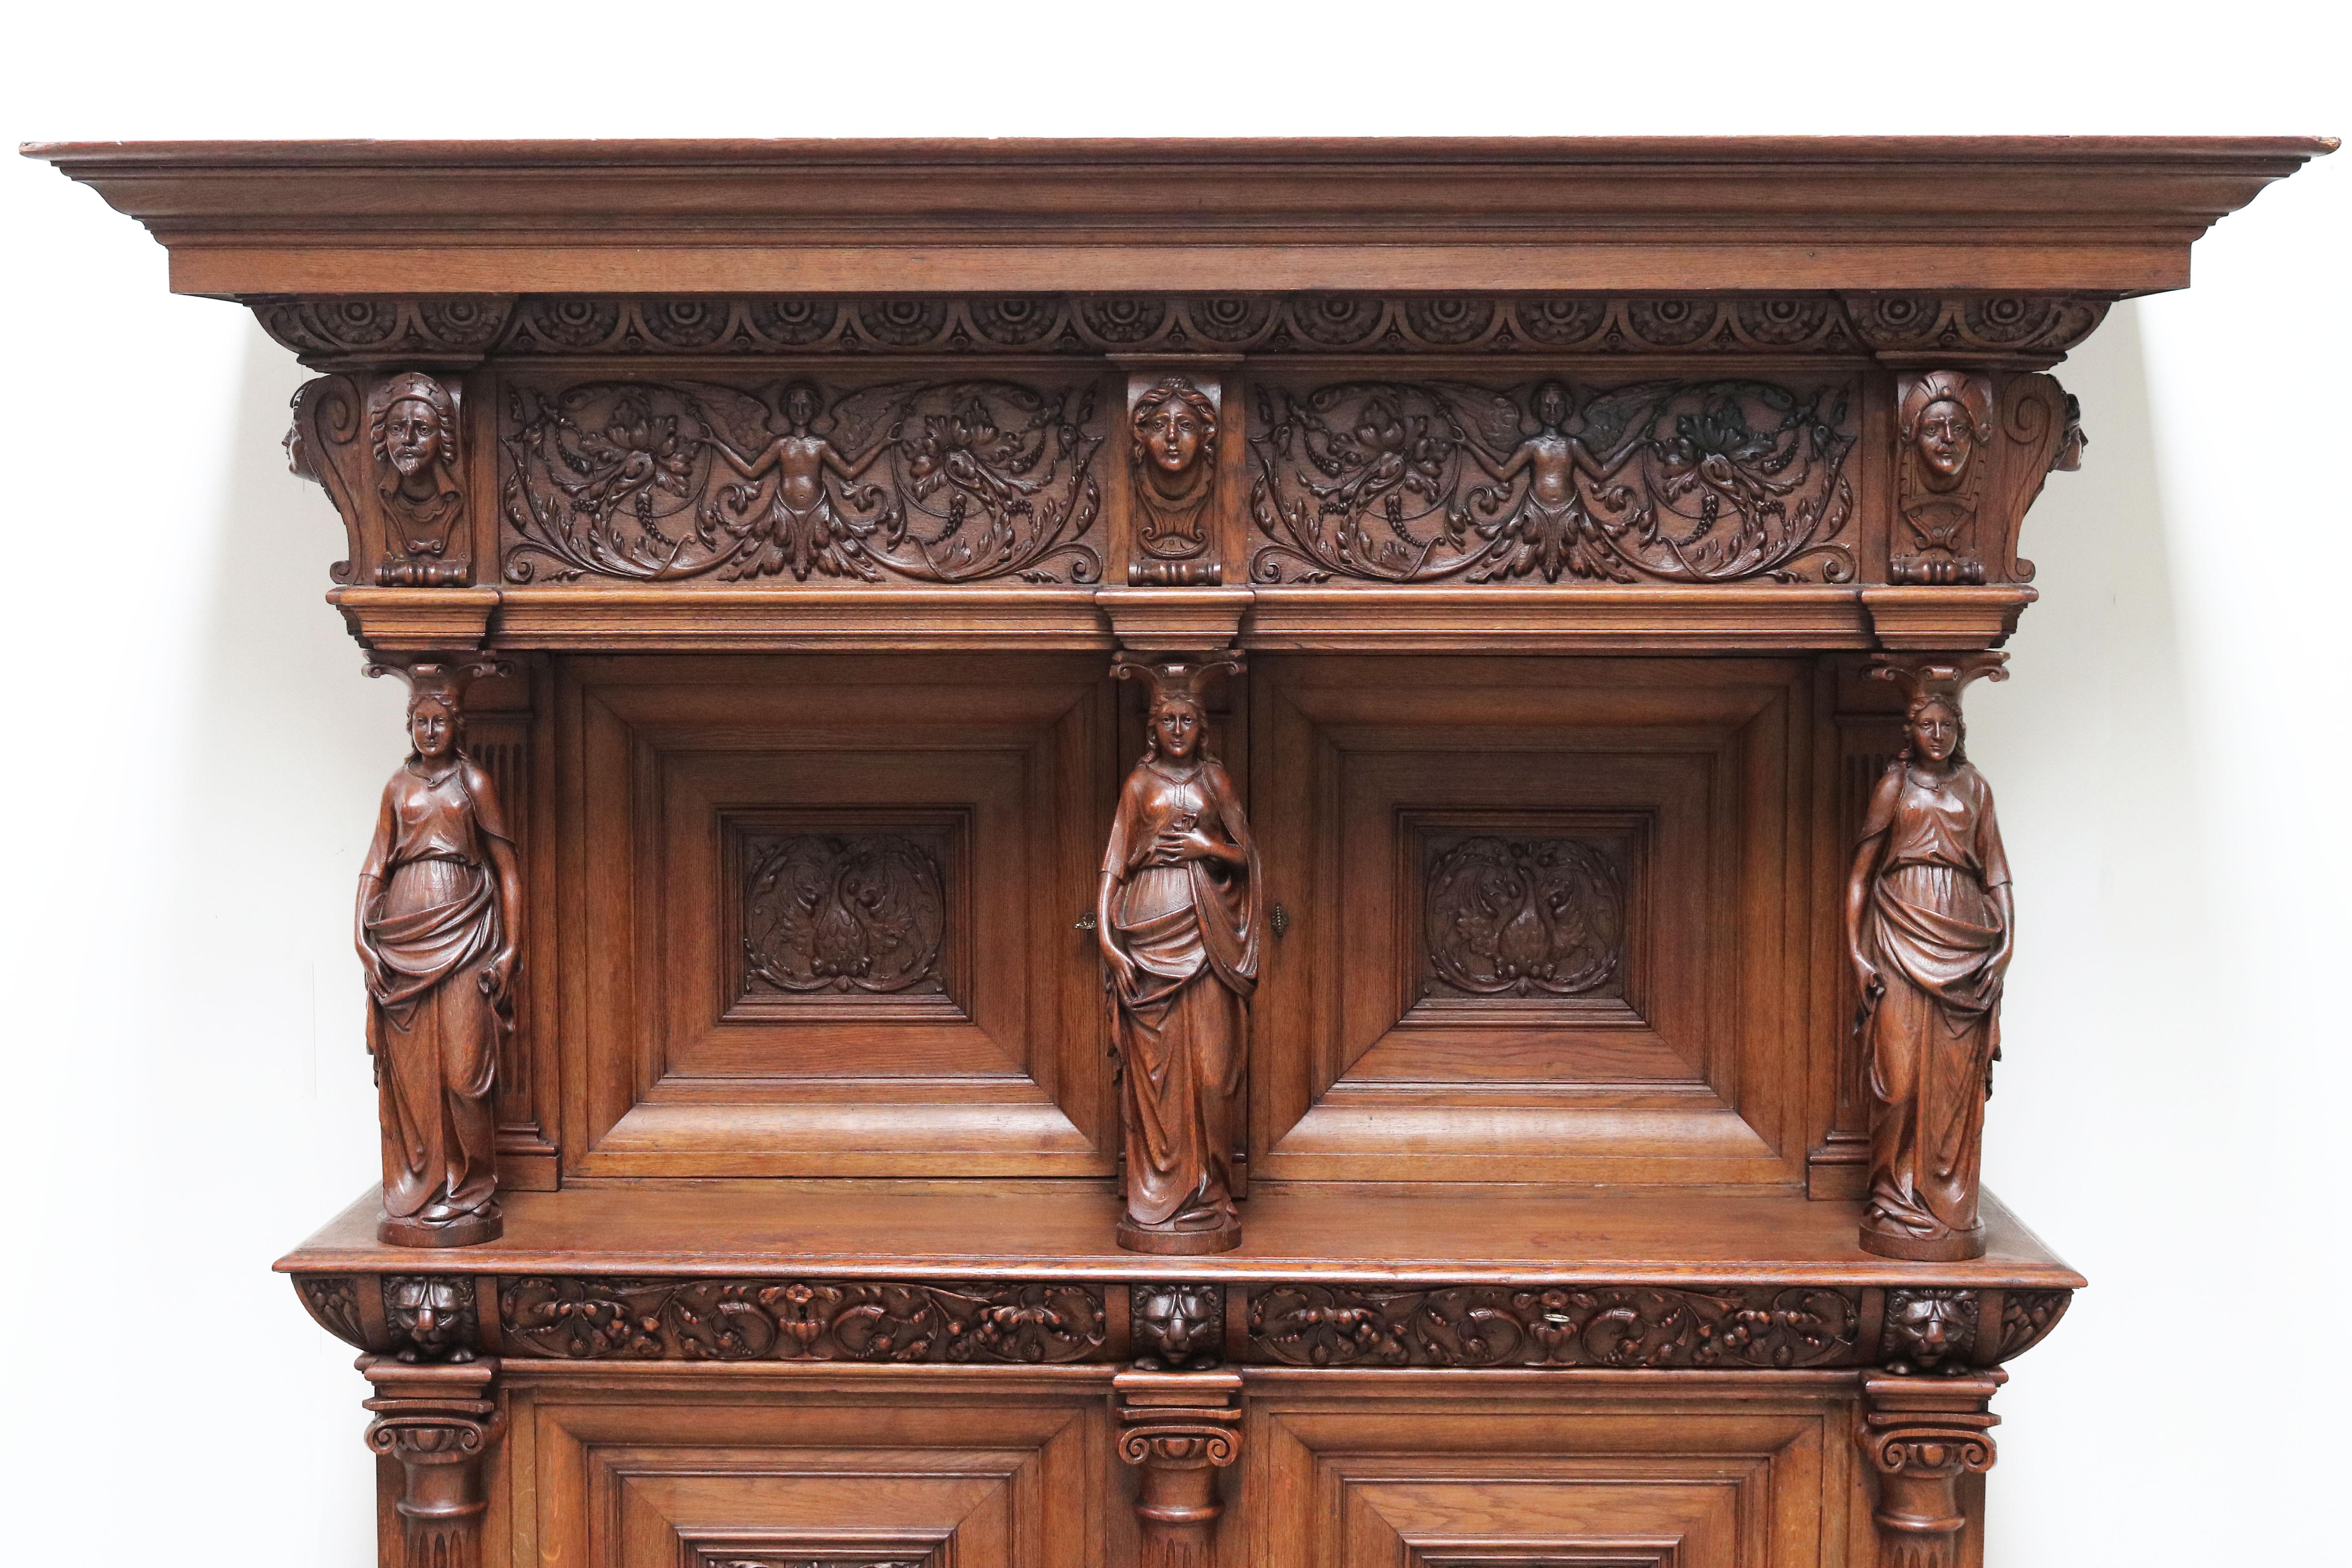 Impressive Dutch Renaissance Revival 19th Century Cabinet Carved Angels & Lions For Sale 1